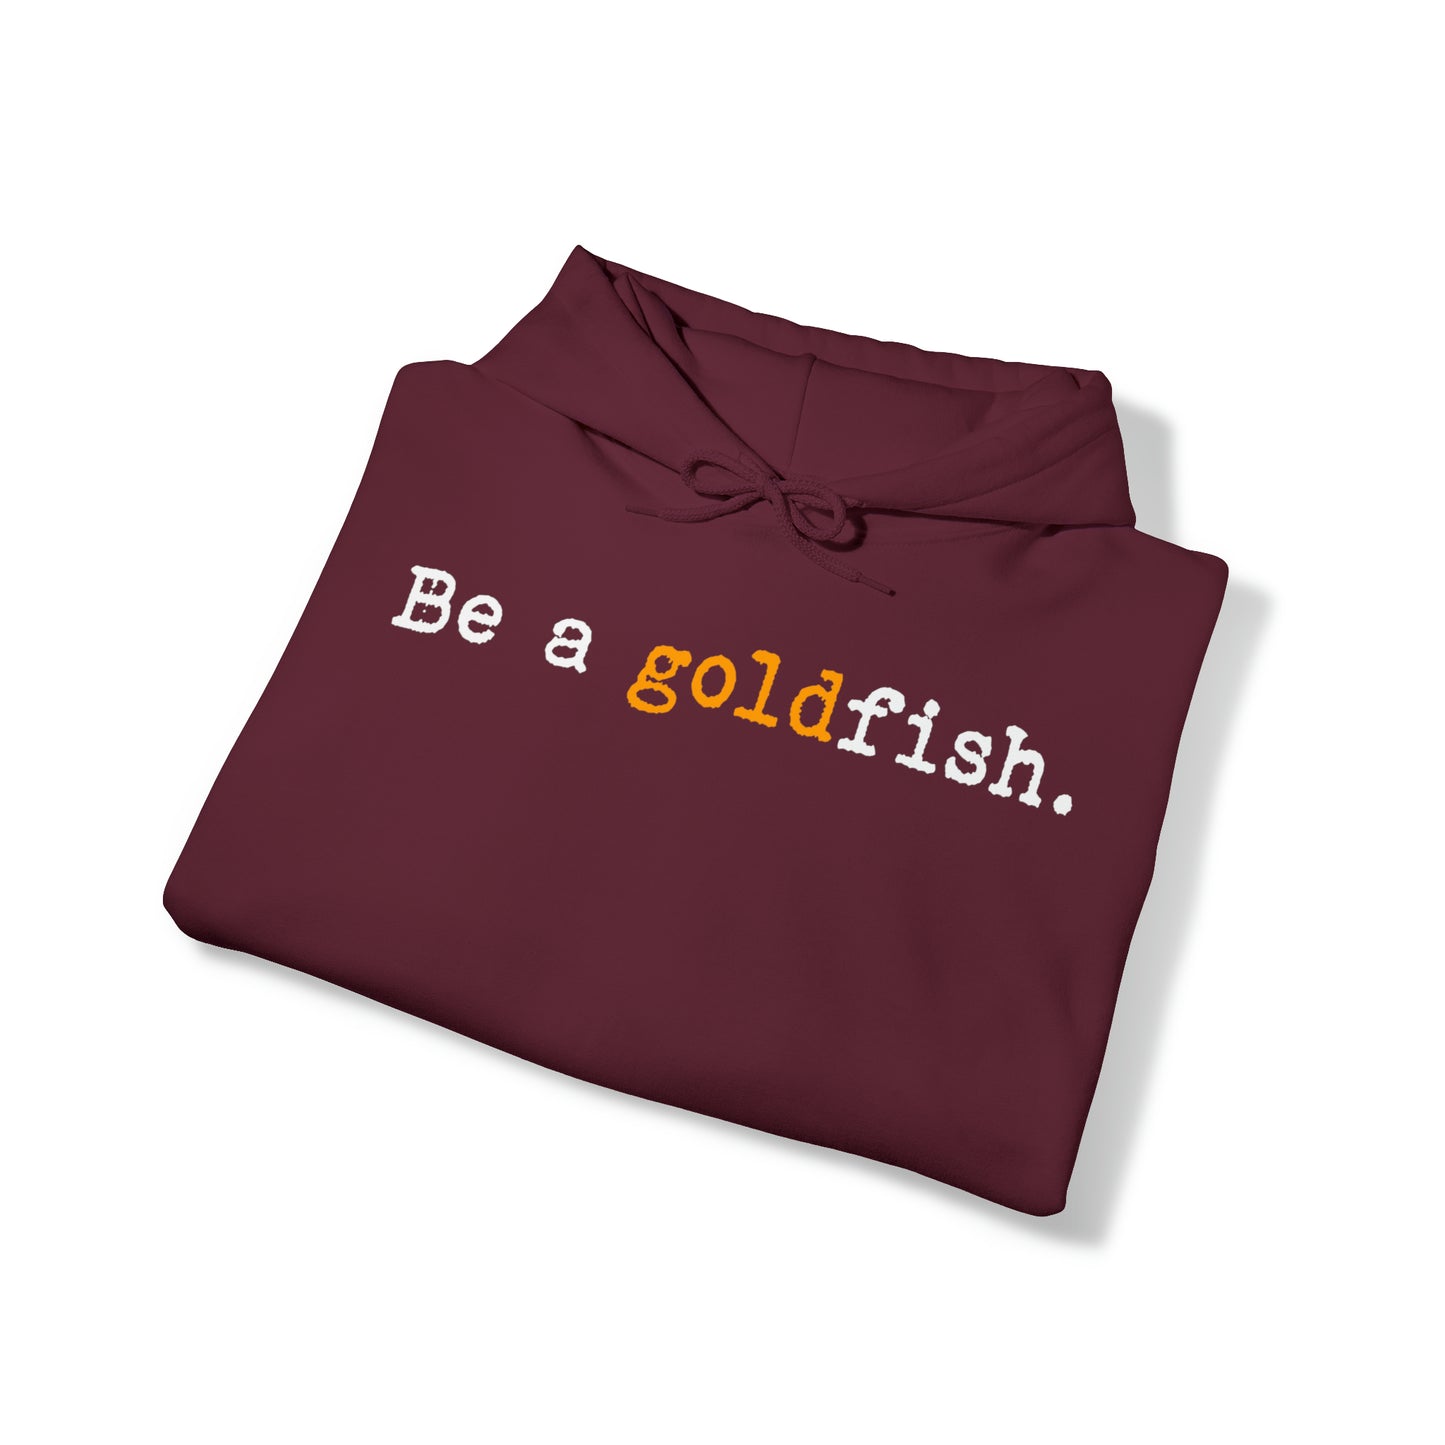 Be a Goldfish Maroon Hoodie